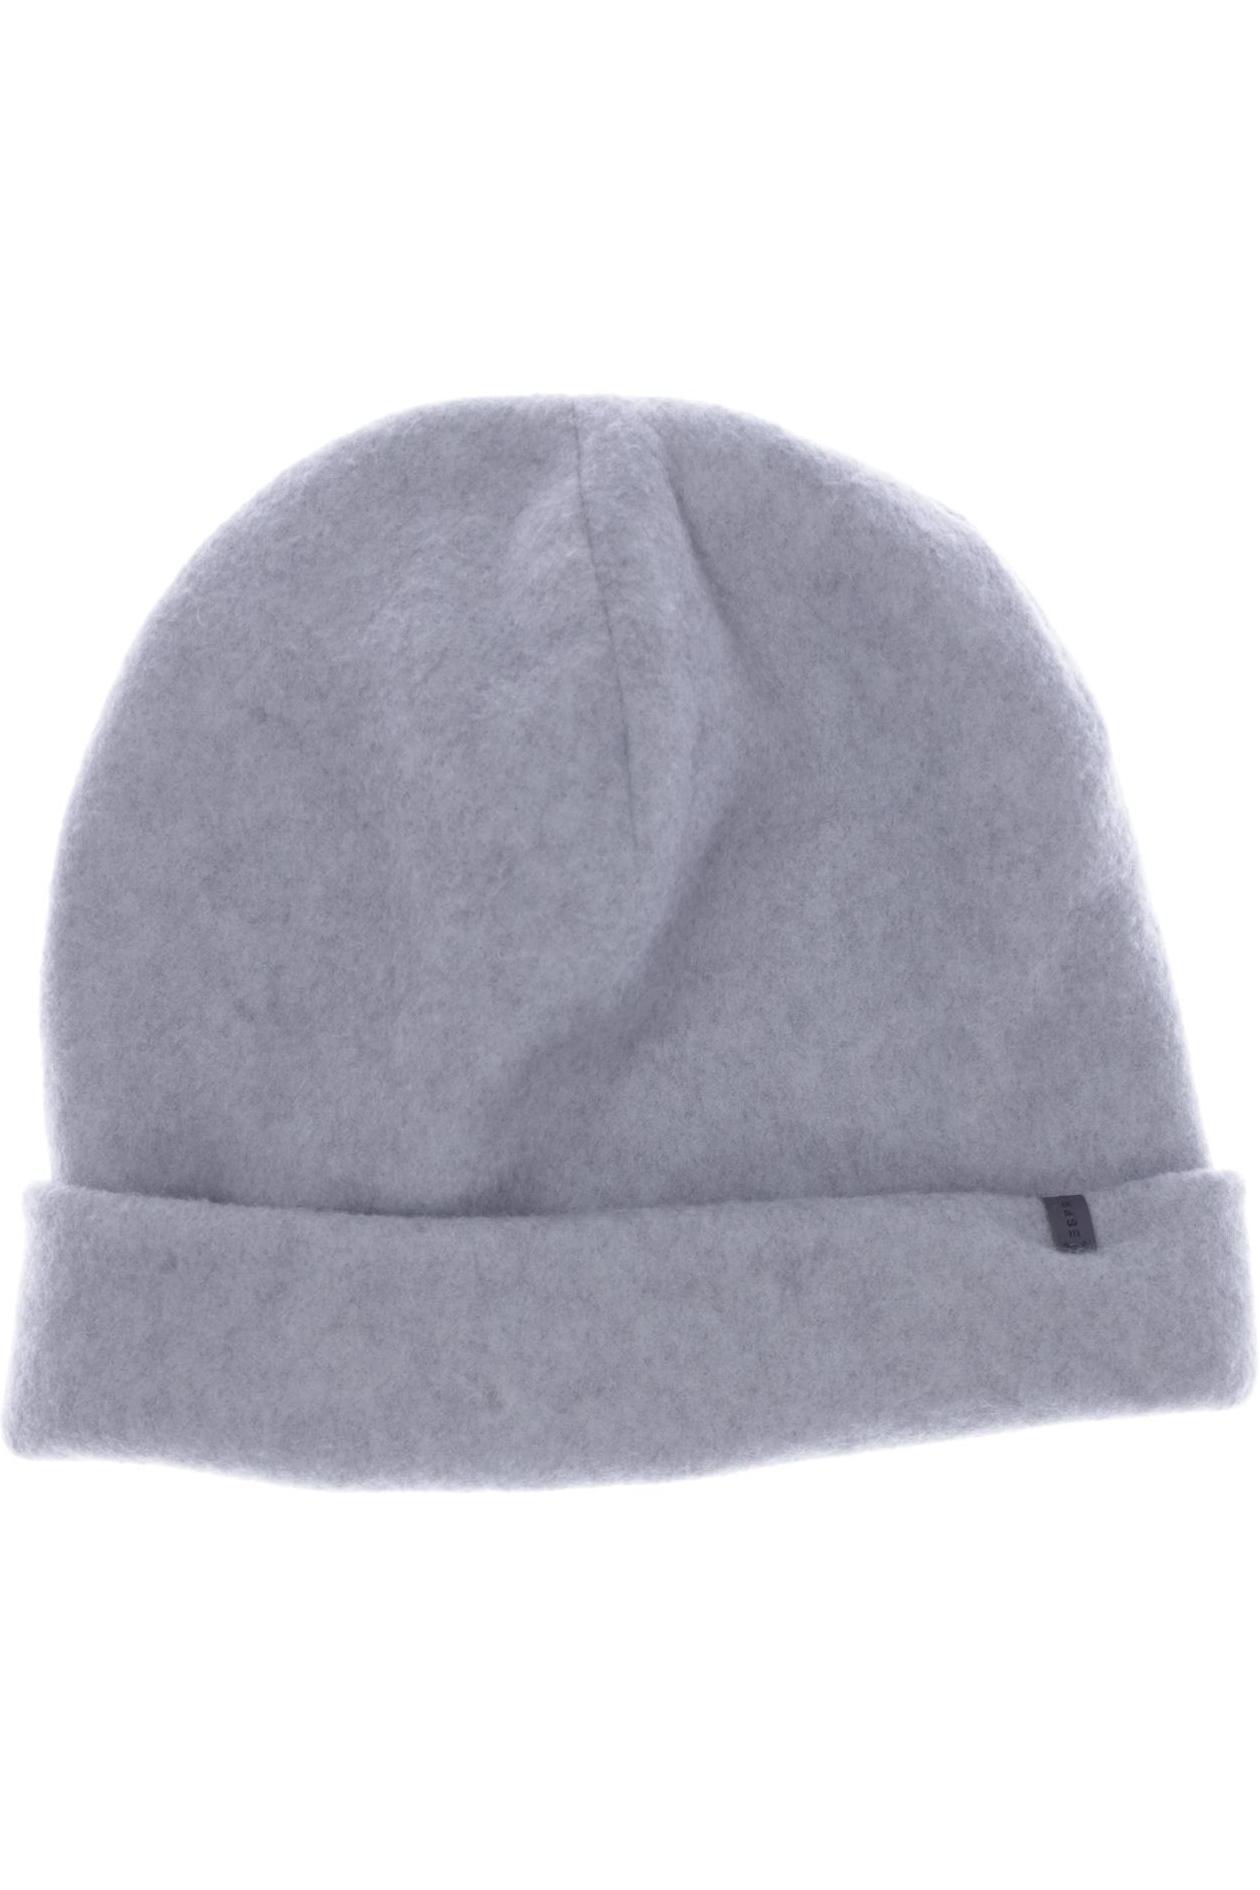 Esprit Damen Hut/Mütze, grau von Esprit